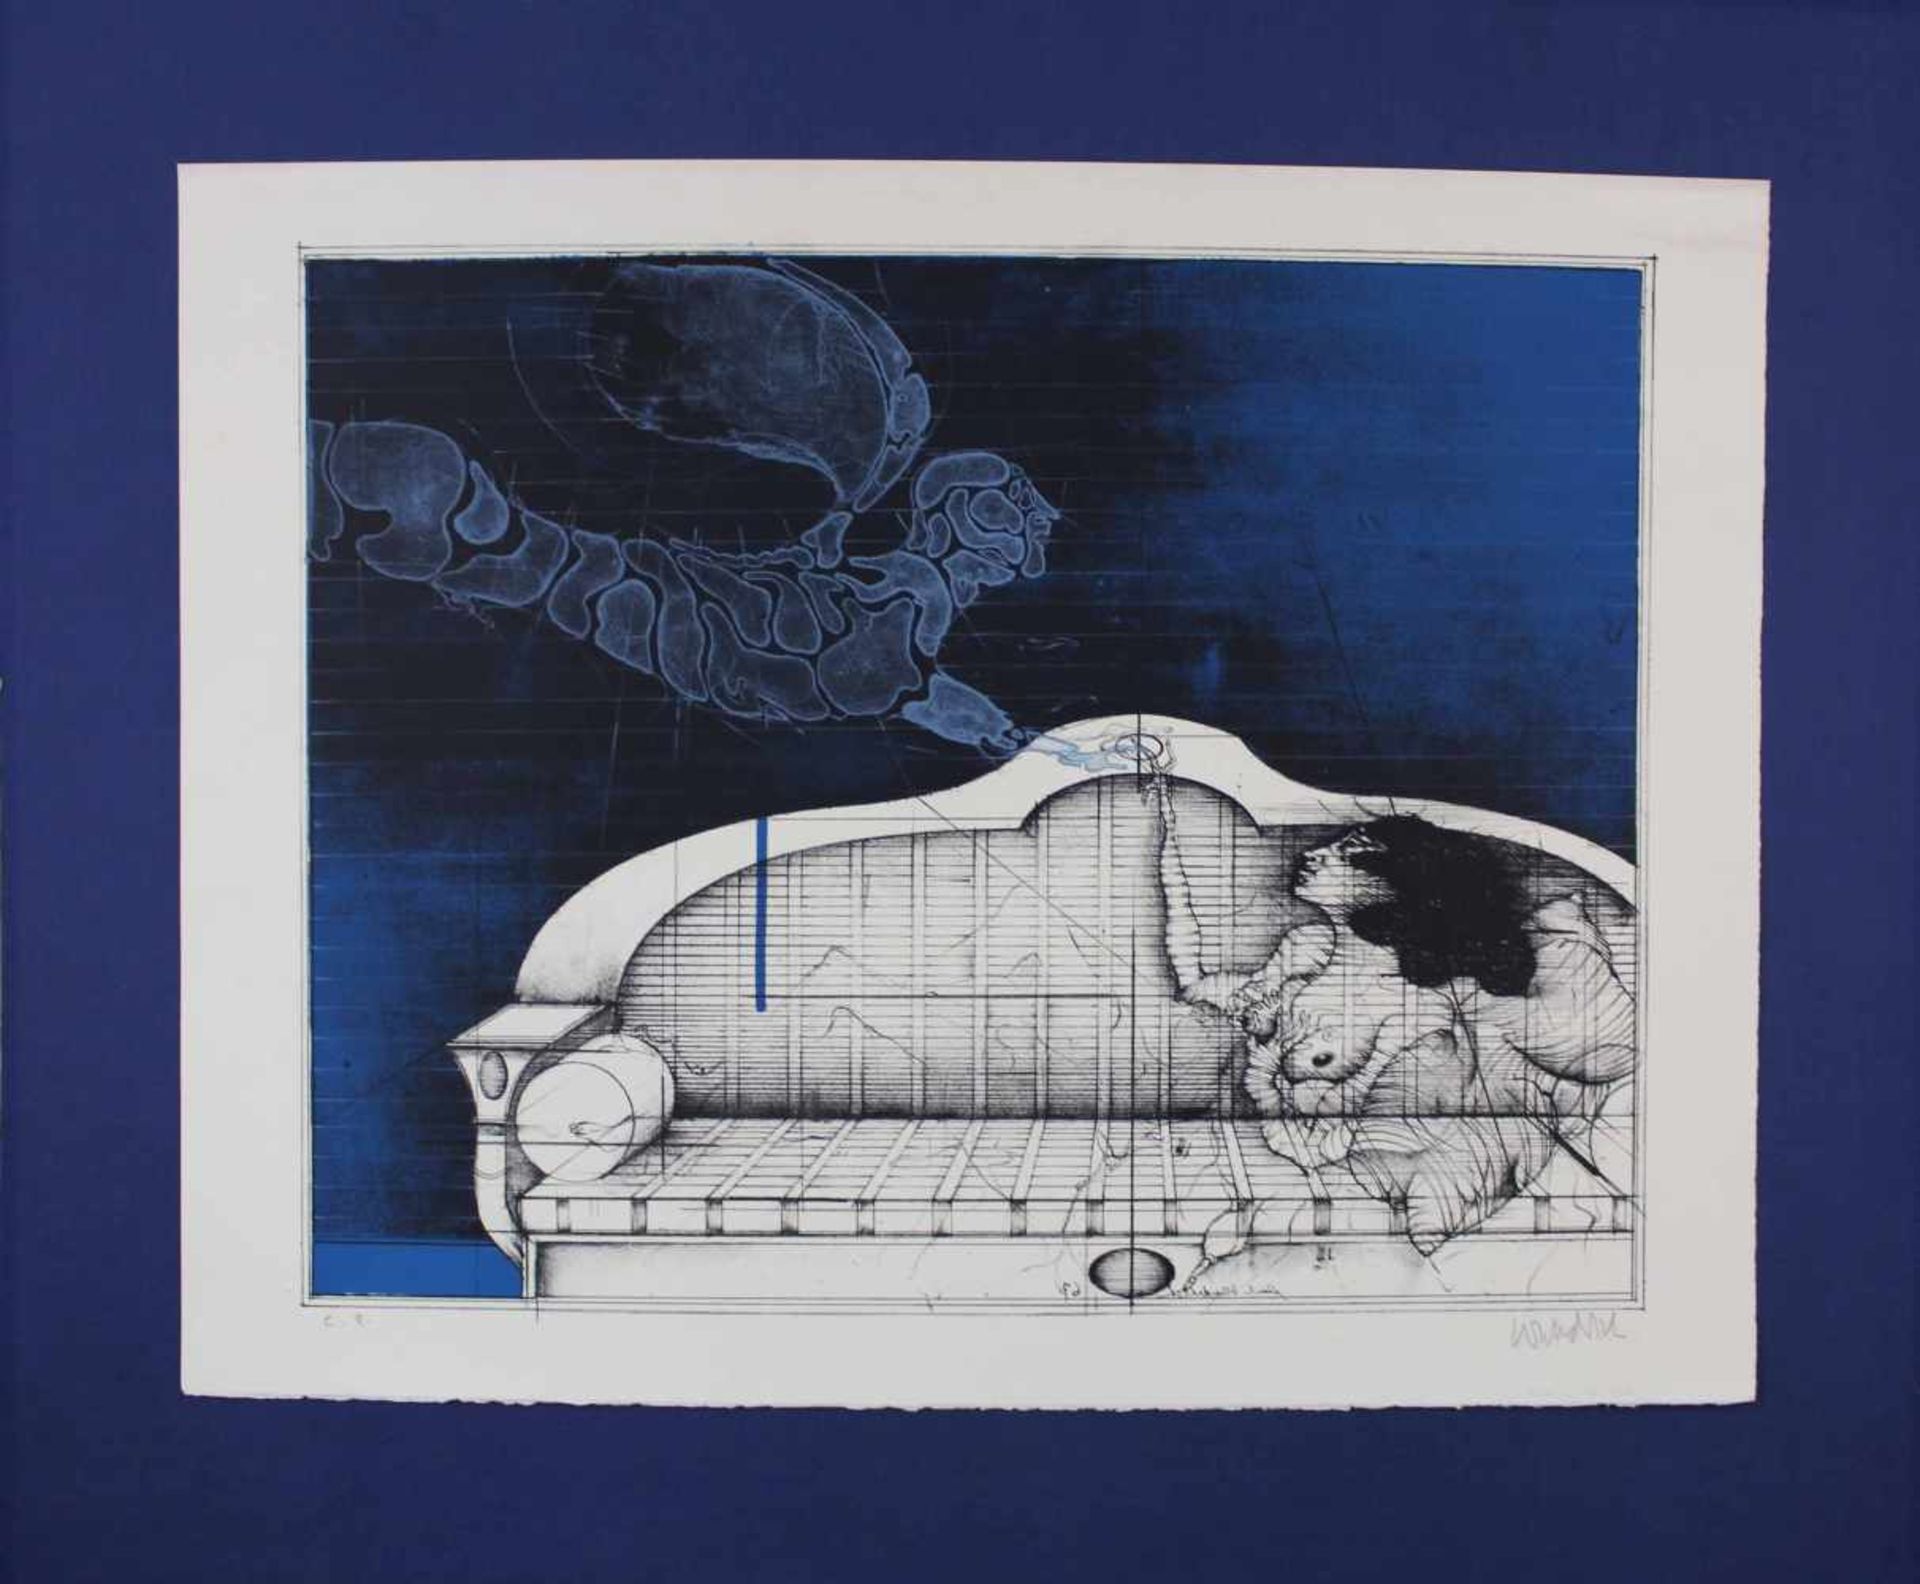 Paul WUNDERLICH (1927 - 2010). "Der Blaue Engel" (The Blue Angel)432 mm x 550 mm die Abbildung. - Image 2 of 6